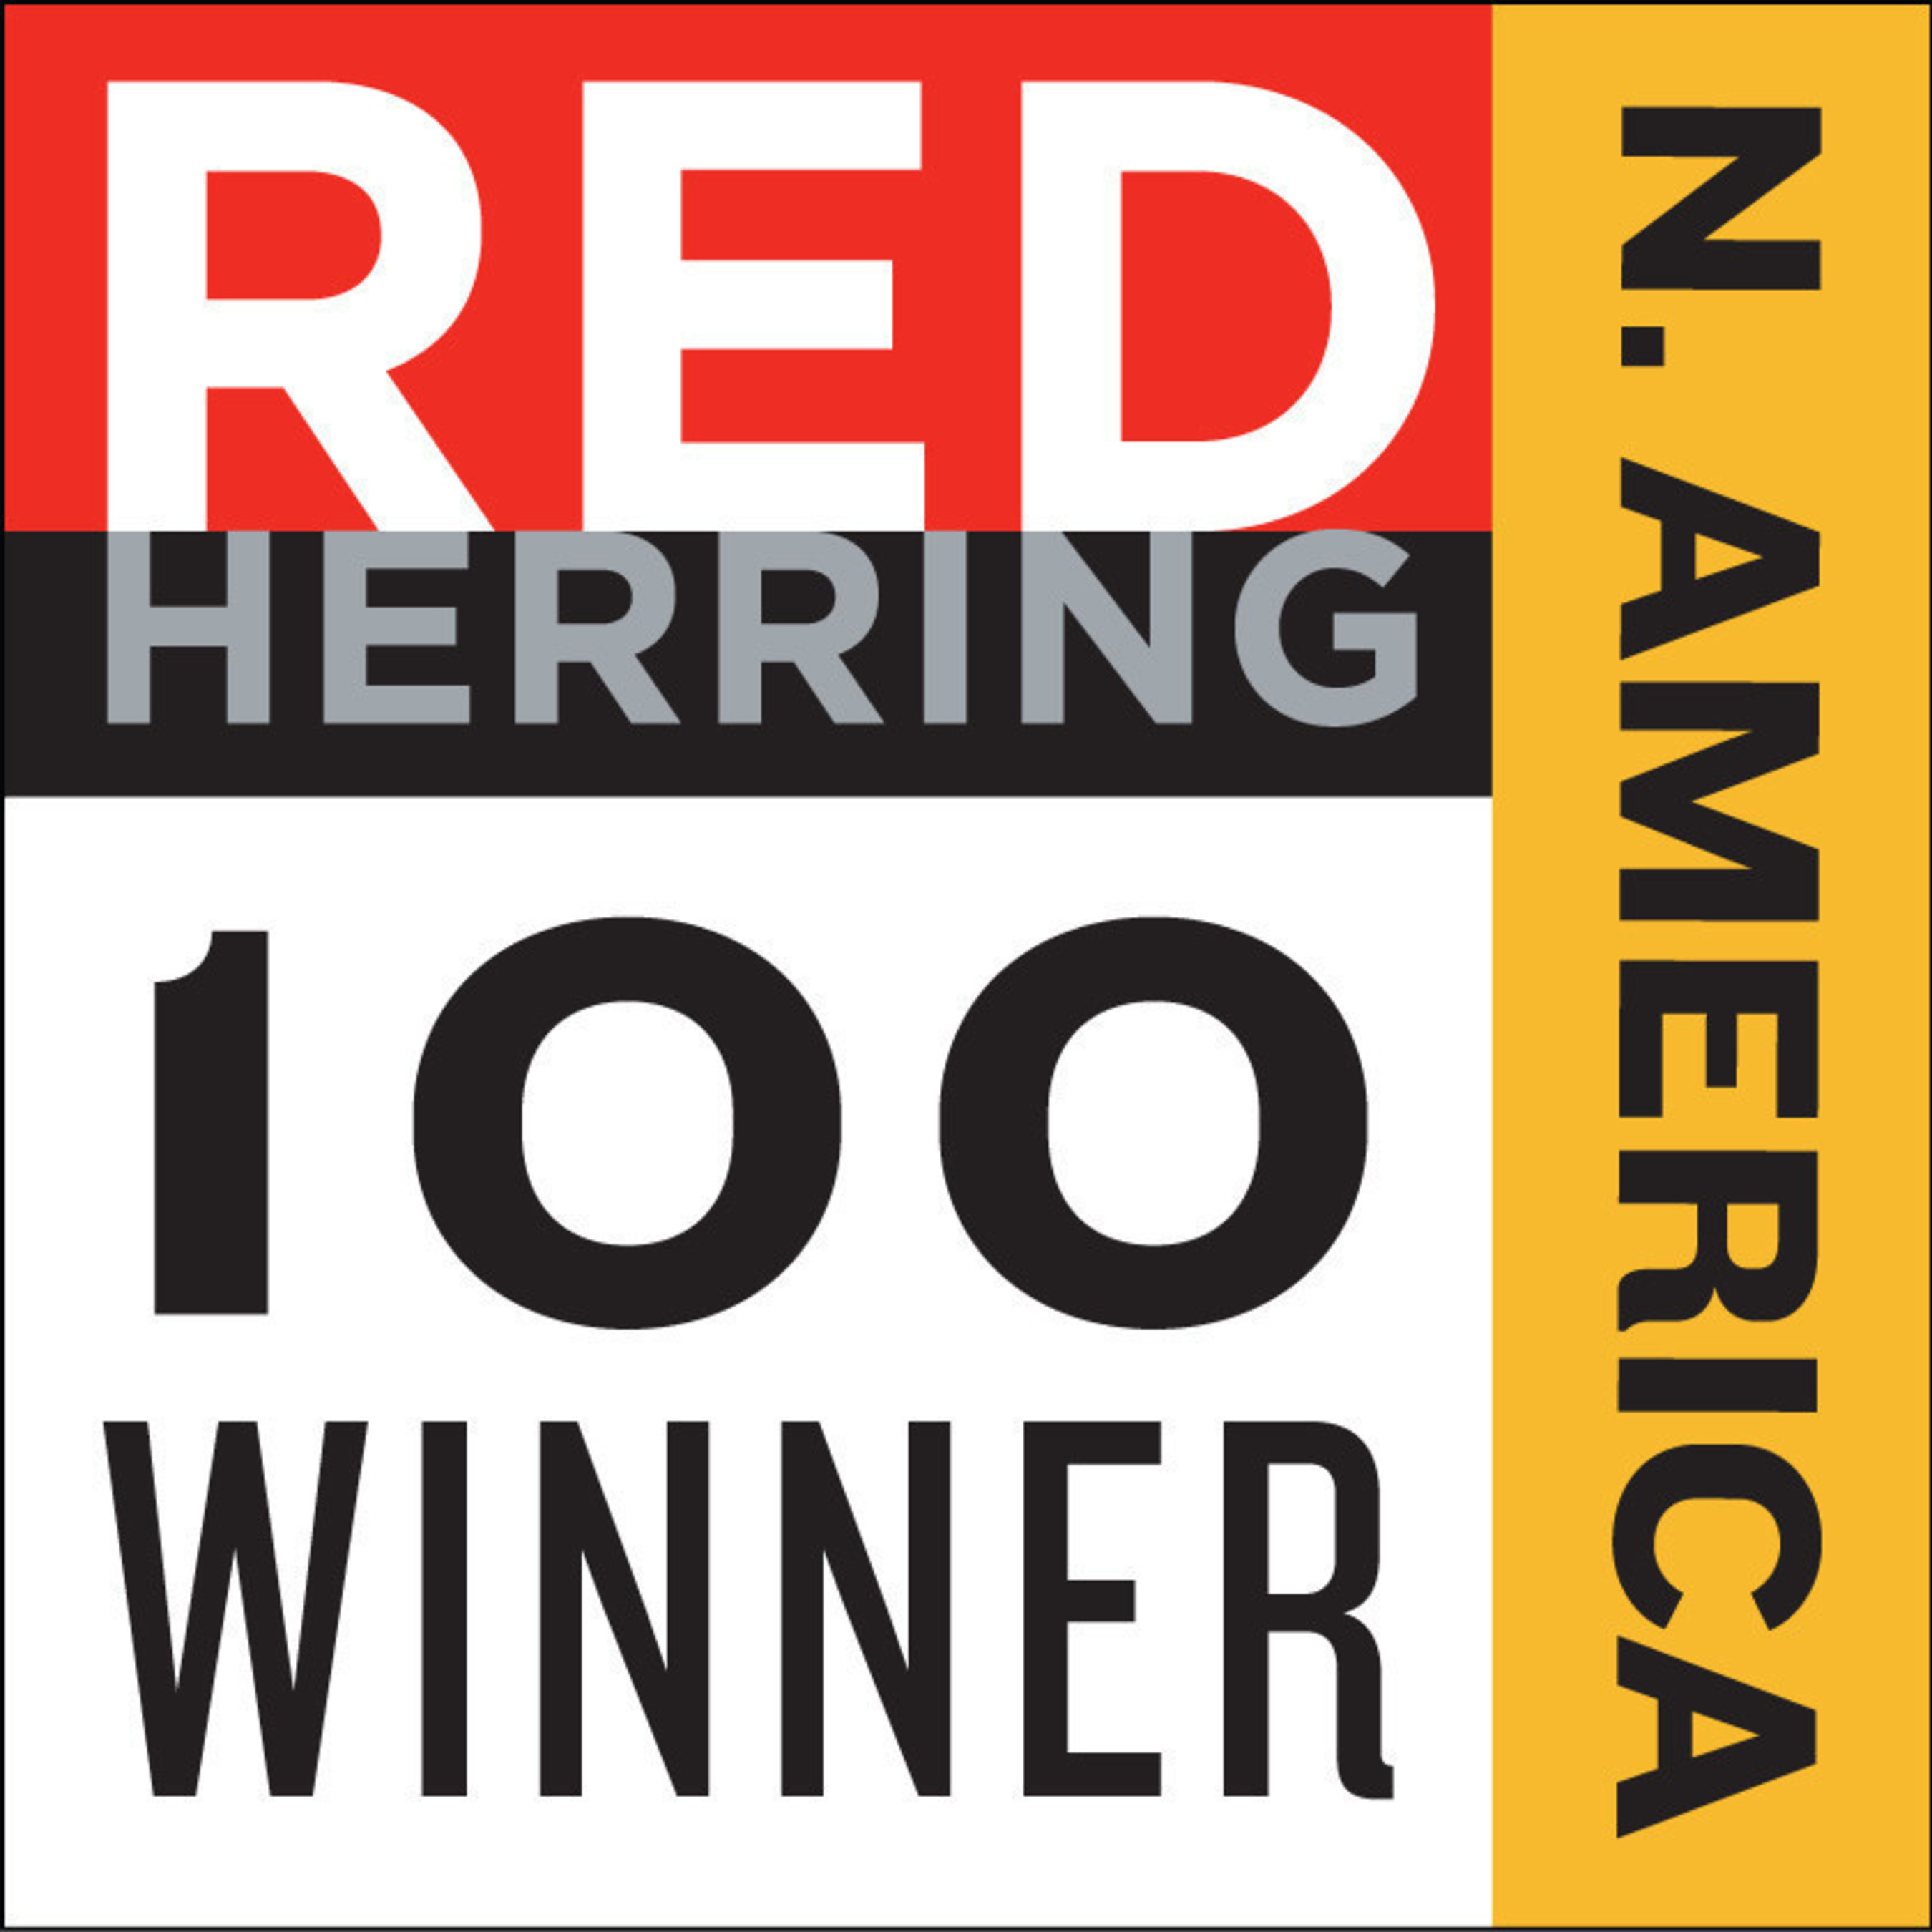 Red Herring 100 Winner